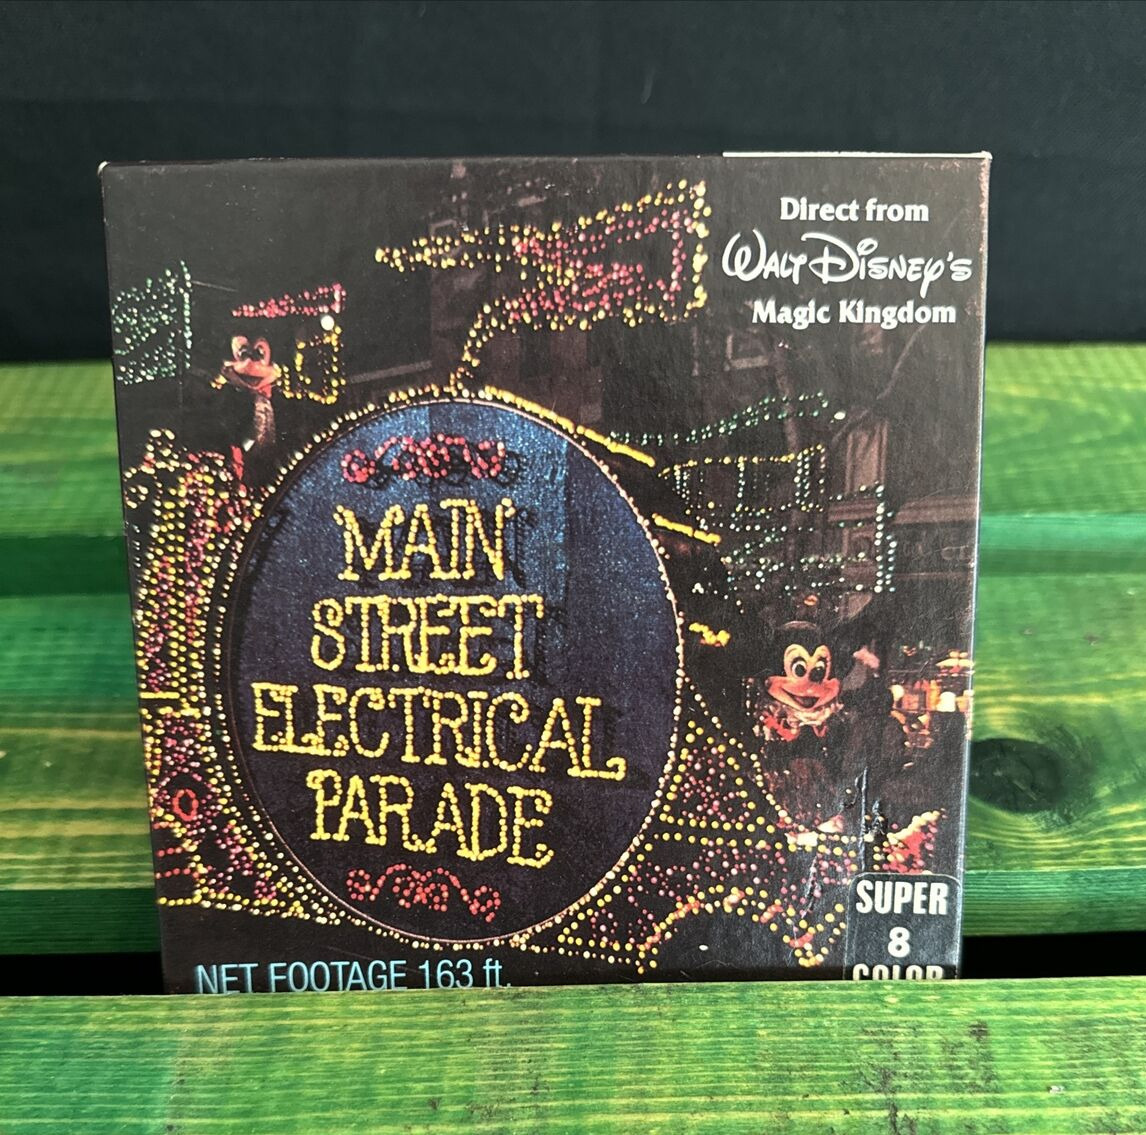 Walt Disney World Super 8 Color Film - Super Sound Main Street Electrical Parade